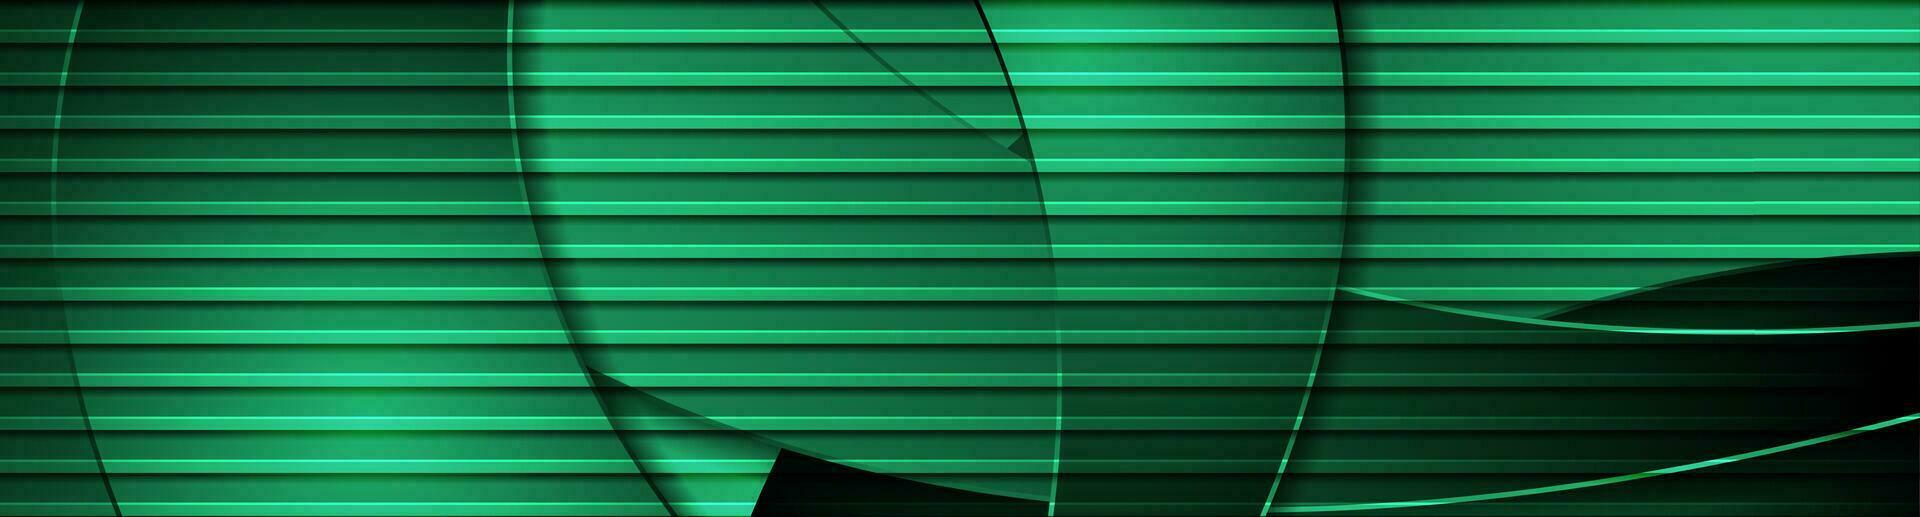 Smeraldo verde astratto aziendale ondulato sfondo vettore